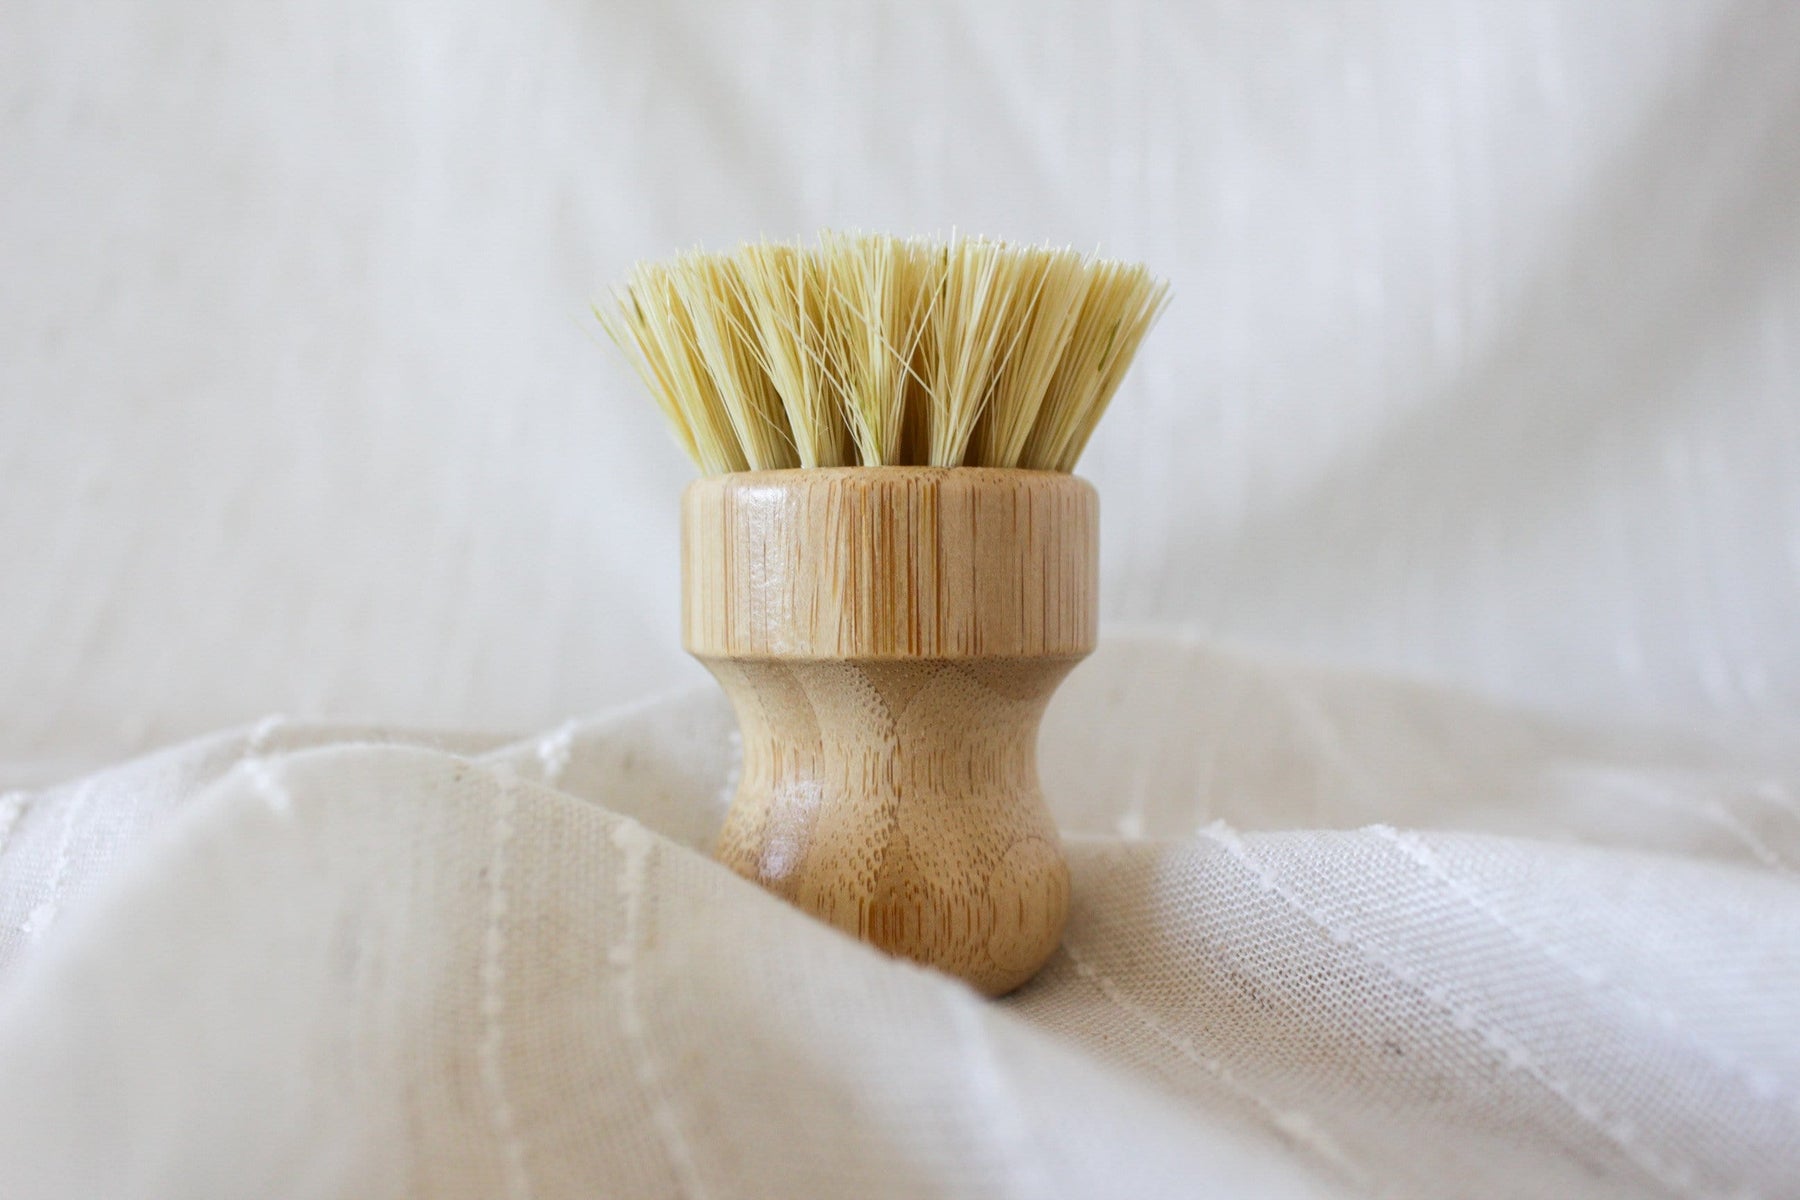 Bamboo and Sisal Dish Brush